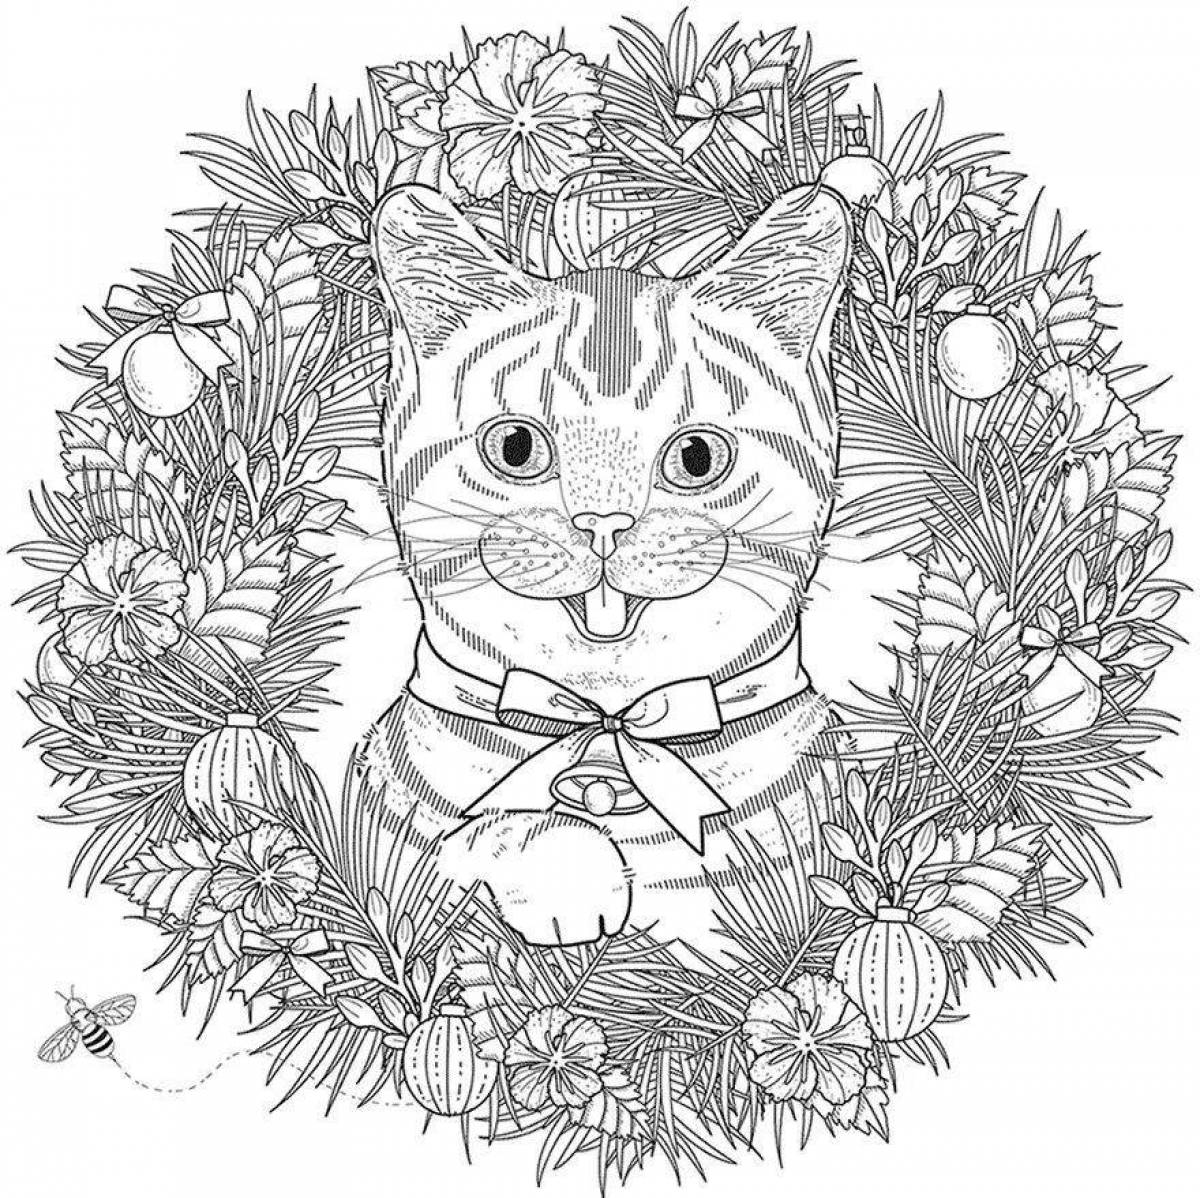 Королевская раскраска для девочек 12 лет - кошки